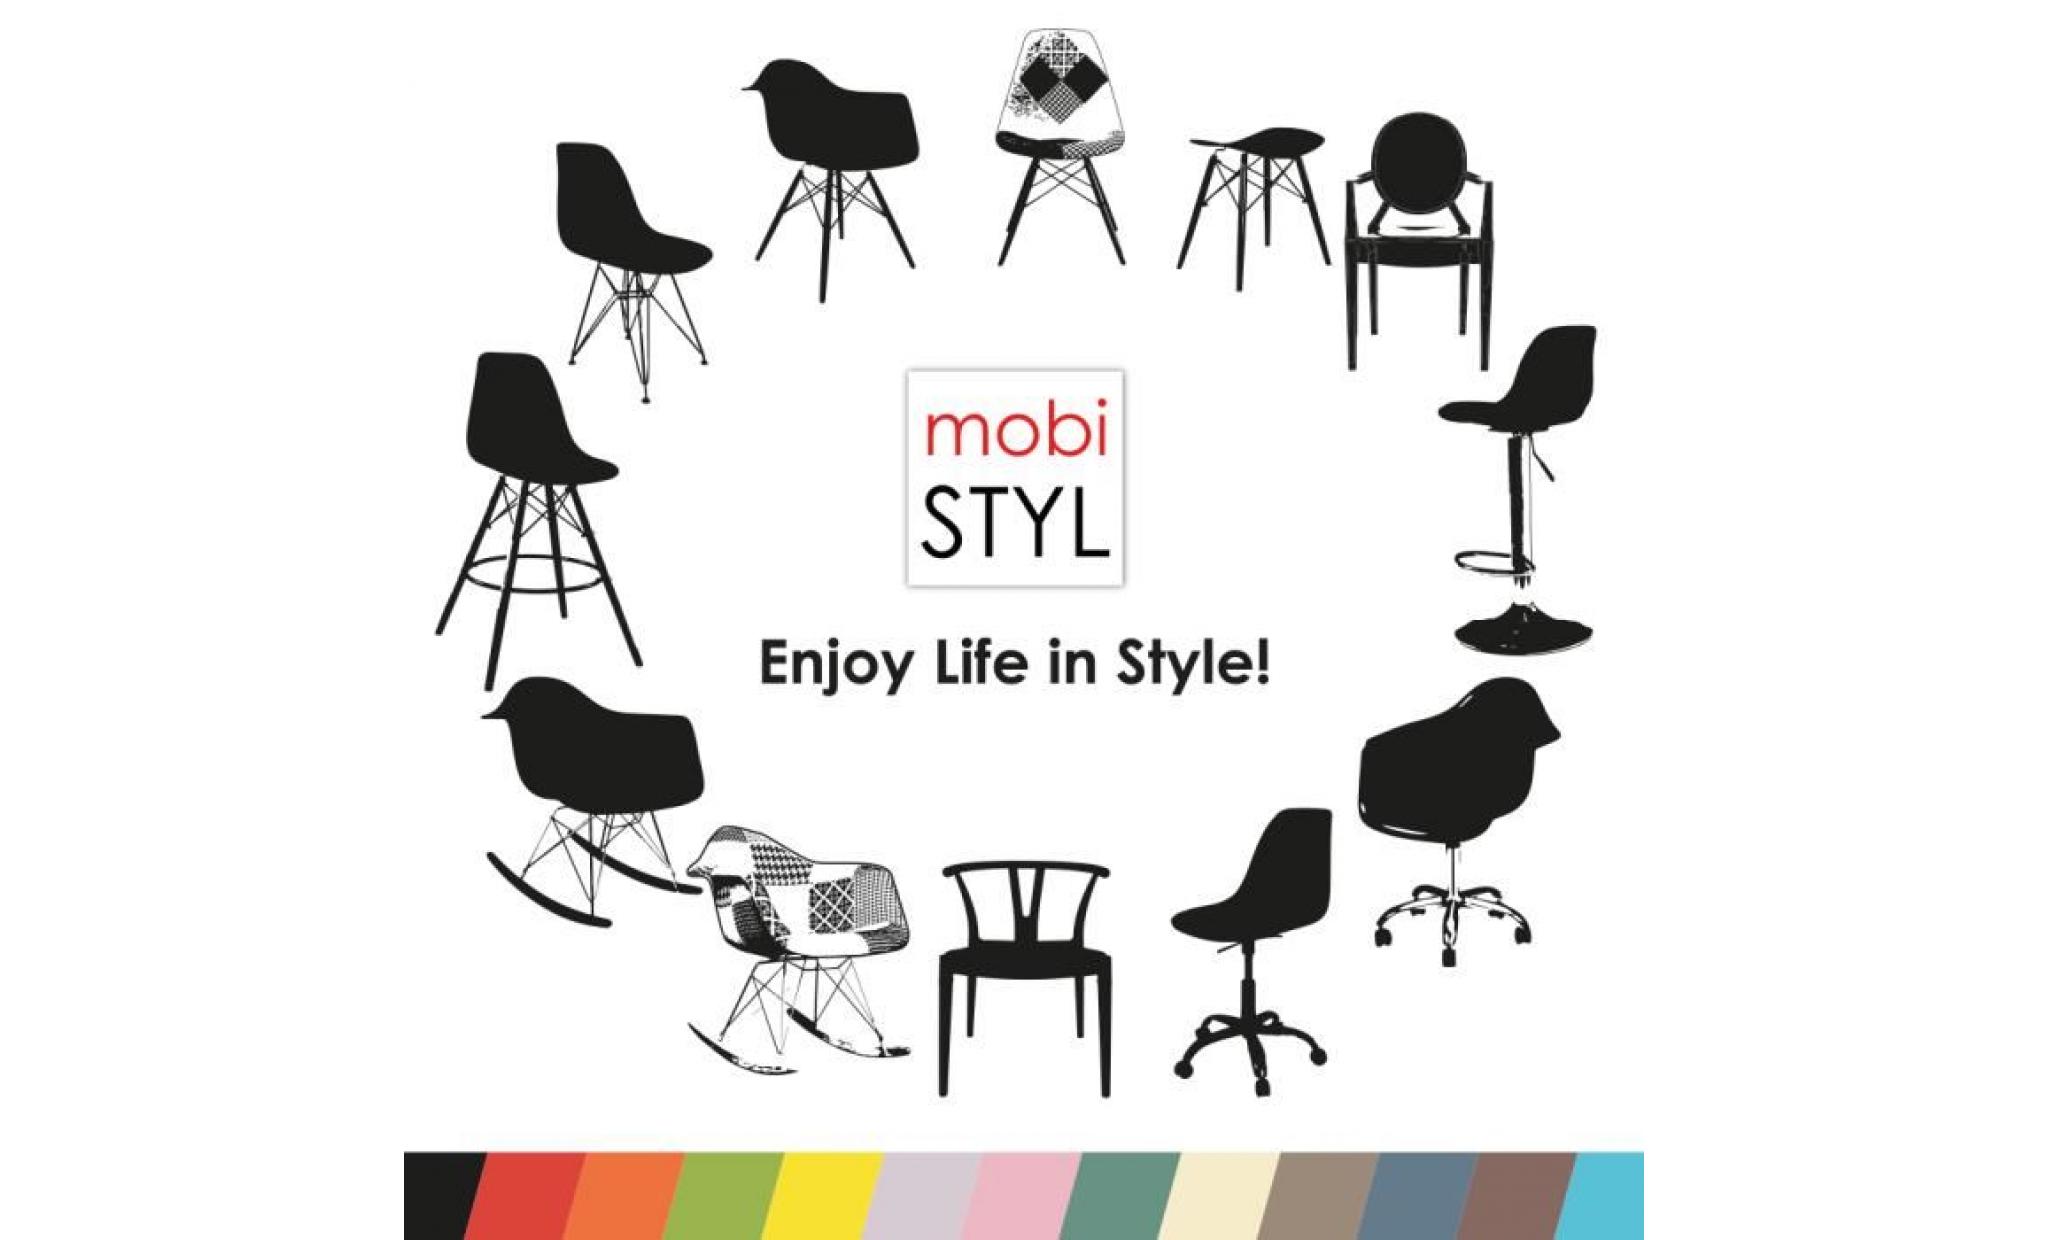 1 x fauteuil à bascule rocking chair design inspiration eiffel eames rar pieds bois clair assise bleu marine mobistyl® pas cher